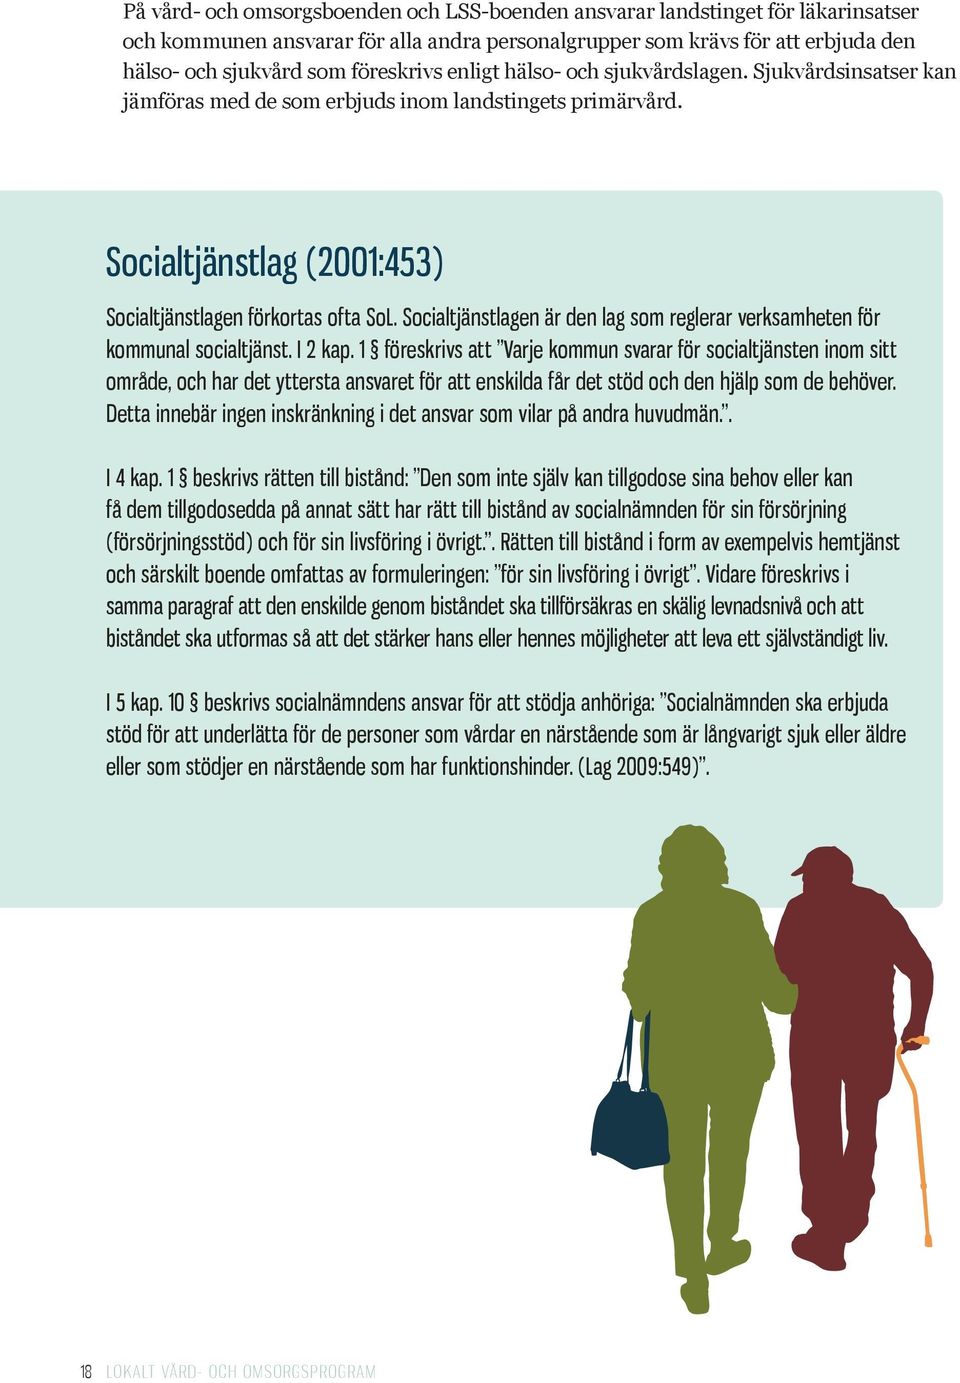 Socialtjänstlagen är den lag som reglerar verksamheten för kommunal socialtjänst. I 2 kap.